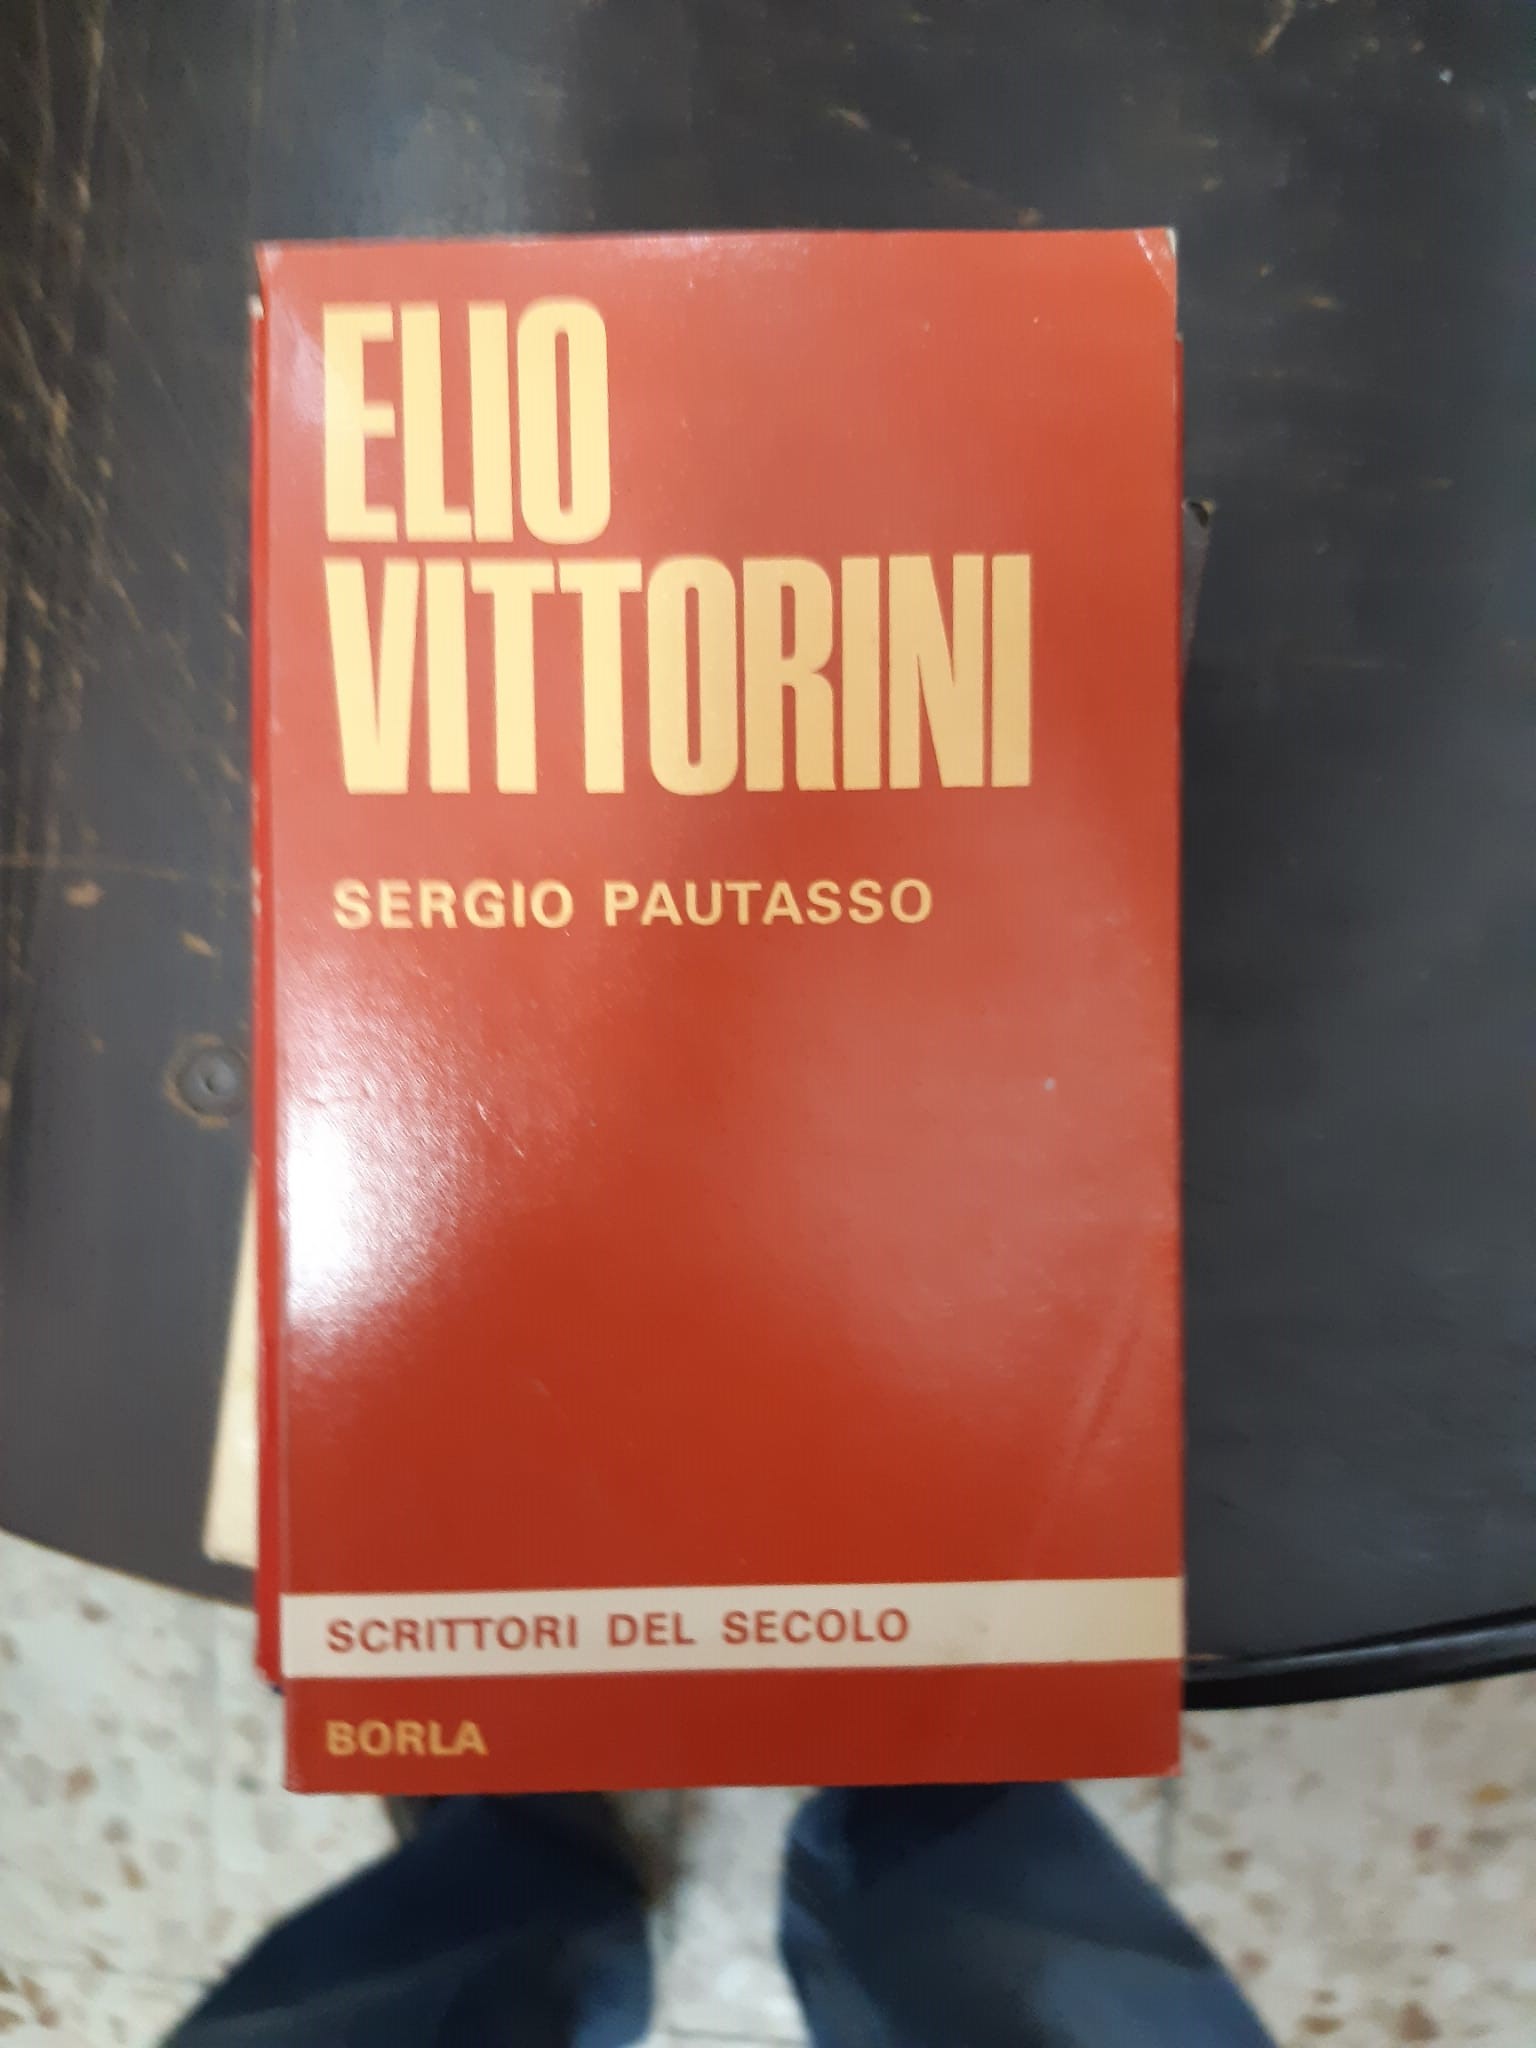 ELIO VITTORINI SERGIO PAUTASSO BORLA 1967 